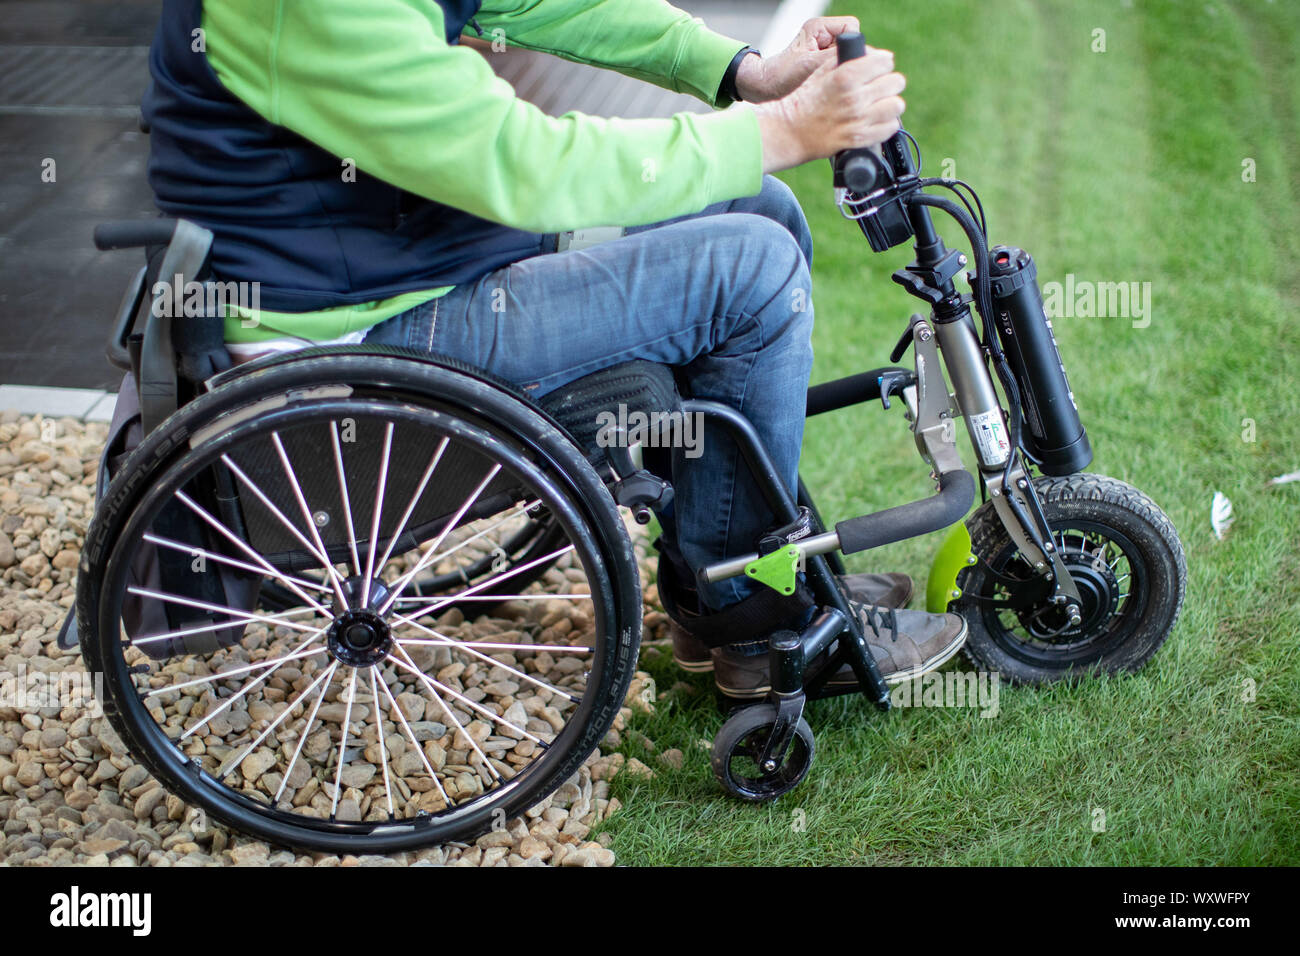 Düsseldorf, Allemagne. 18 Sep, 2019. Un fauteuil roulant d'un dispositif de  remorquage se dresse sur une piste d'essai de fauteuils roulants. 'Triride'  est un dispositif de remorquage léger qui peut être couplé